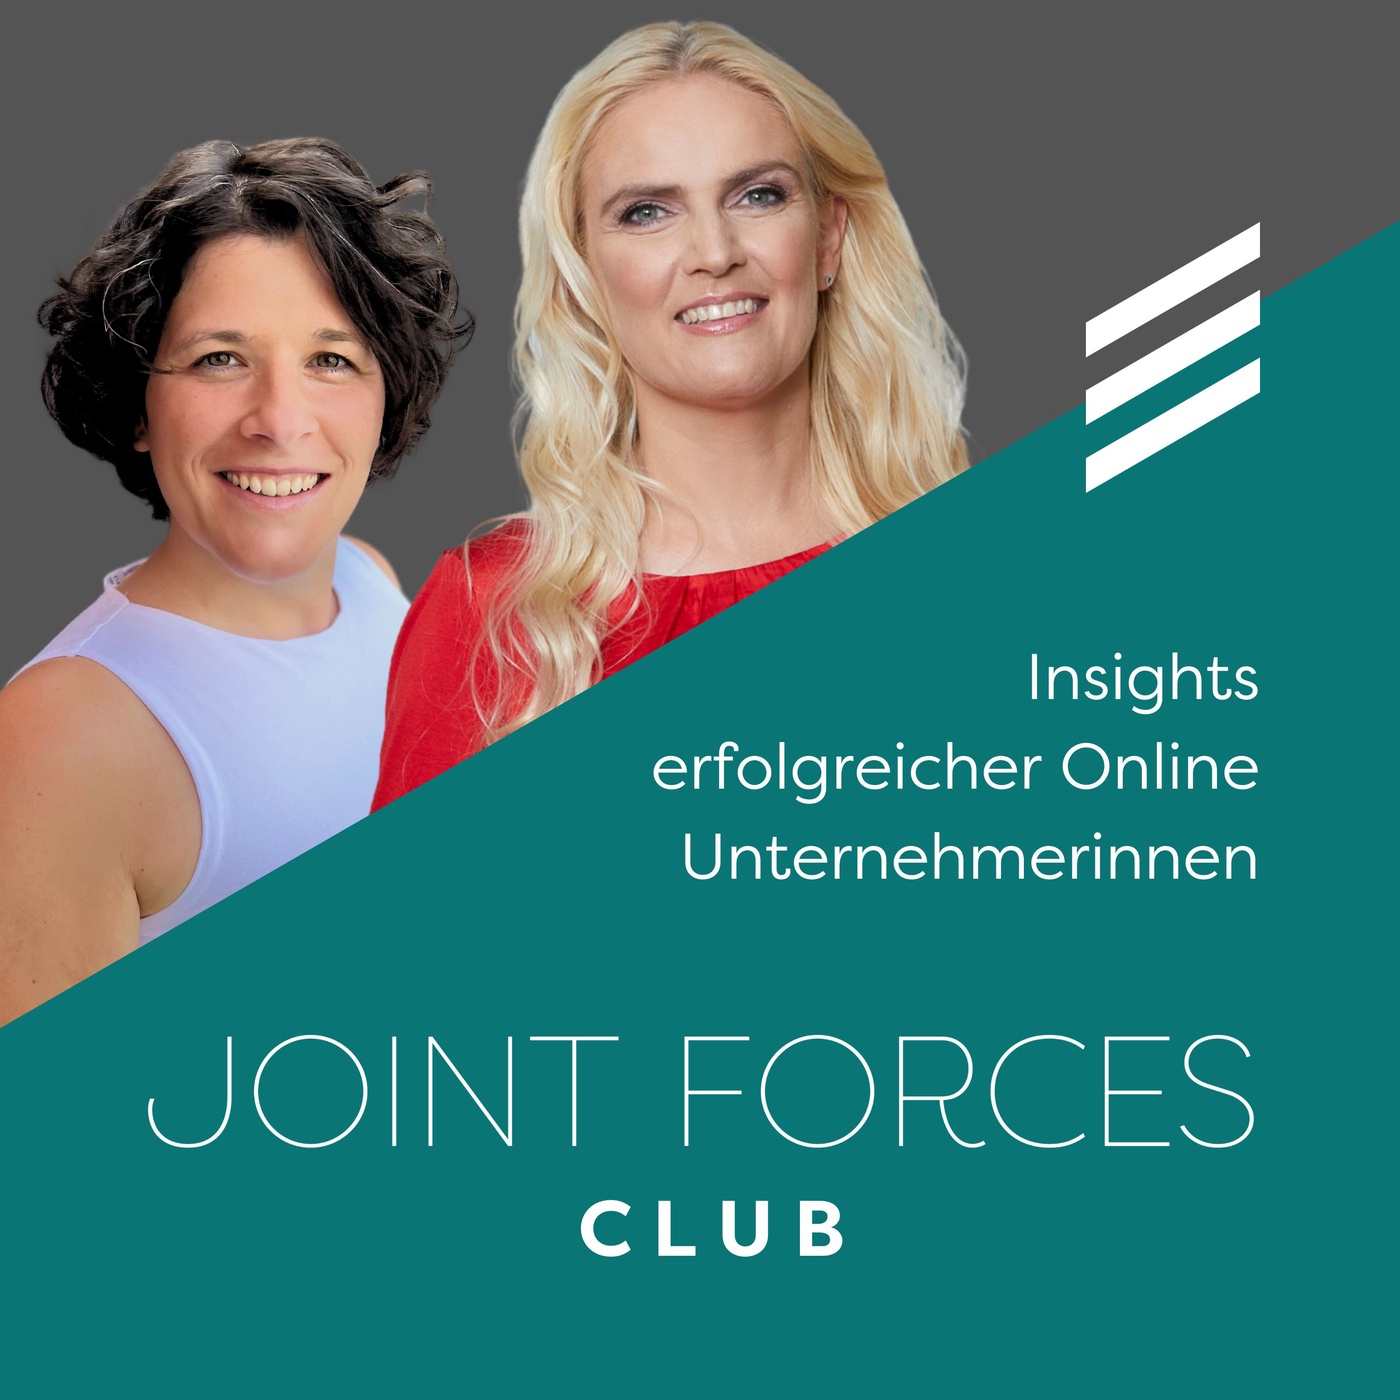 Selbstbestimmt, erfolgreich, richtungsweisend - Ein Gespräch über Female Entrepreneurship - mit Sigrun Gudjonsdottir